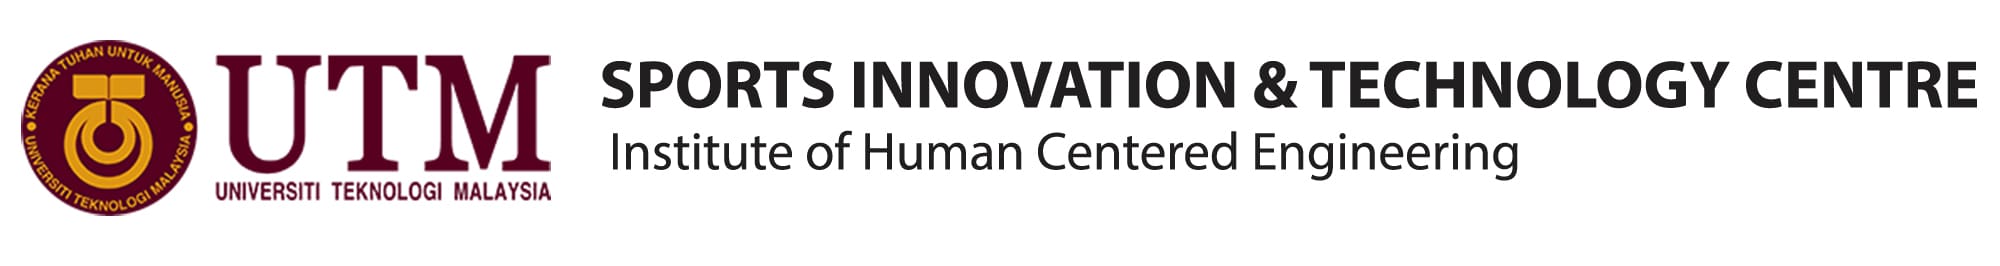 Sport Innovation & Technology Centre